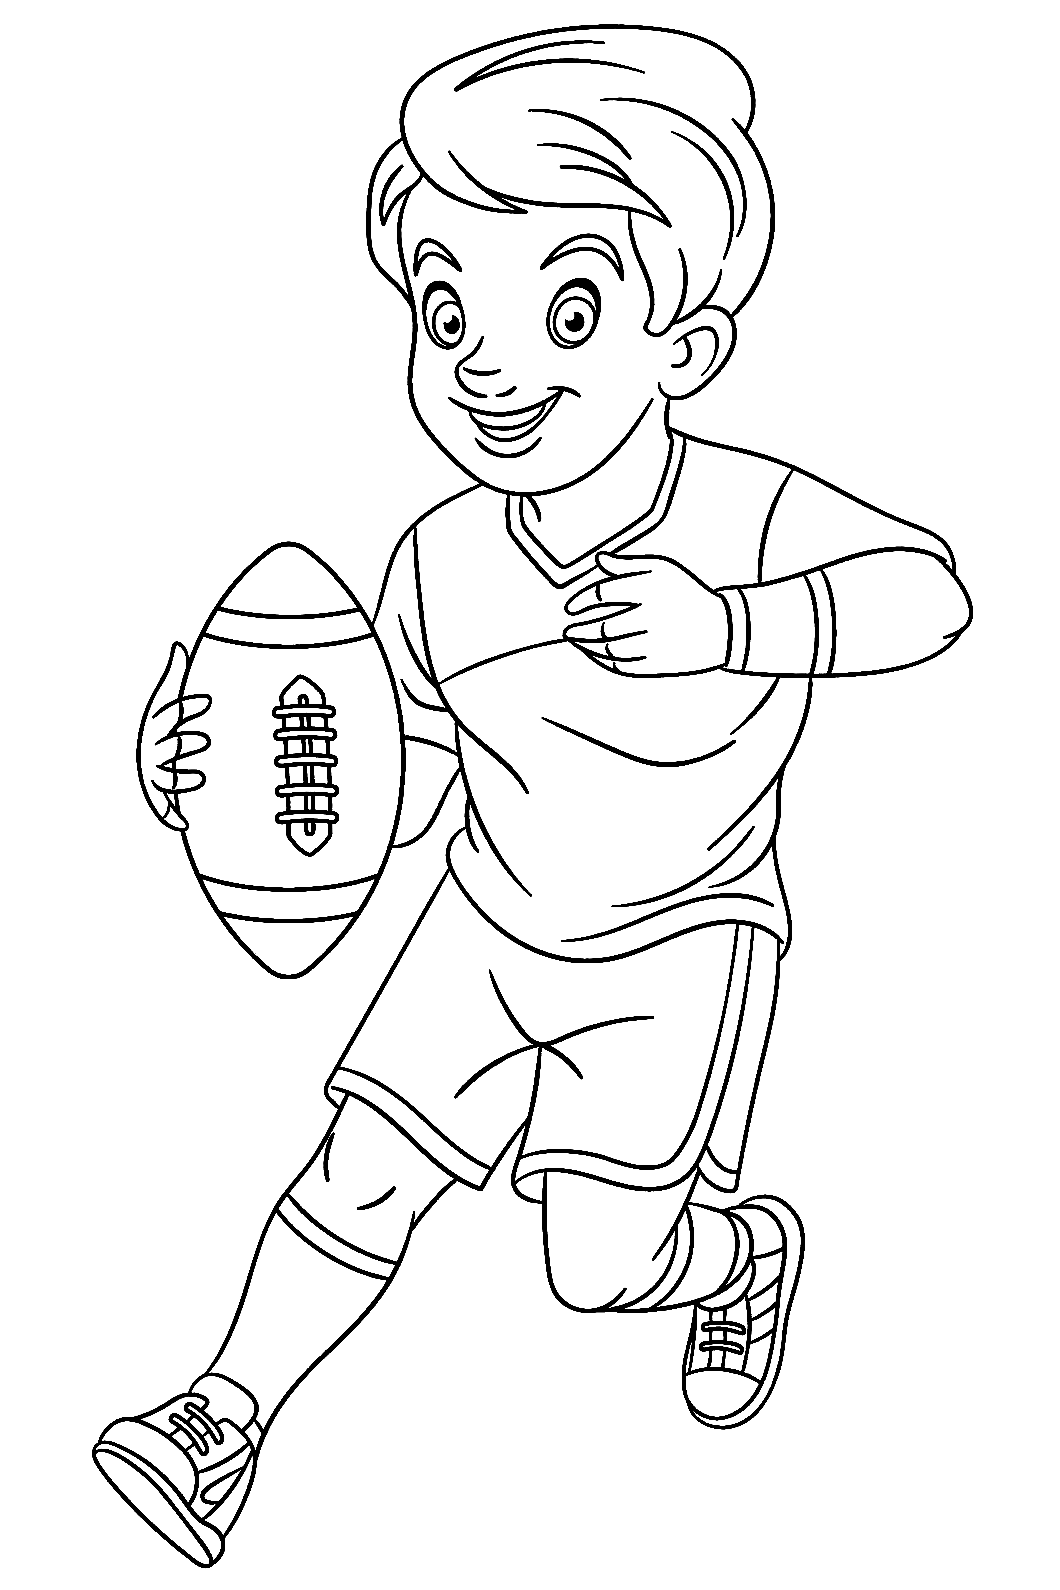 Niño jugando al rugby de rugby